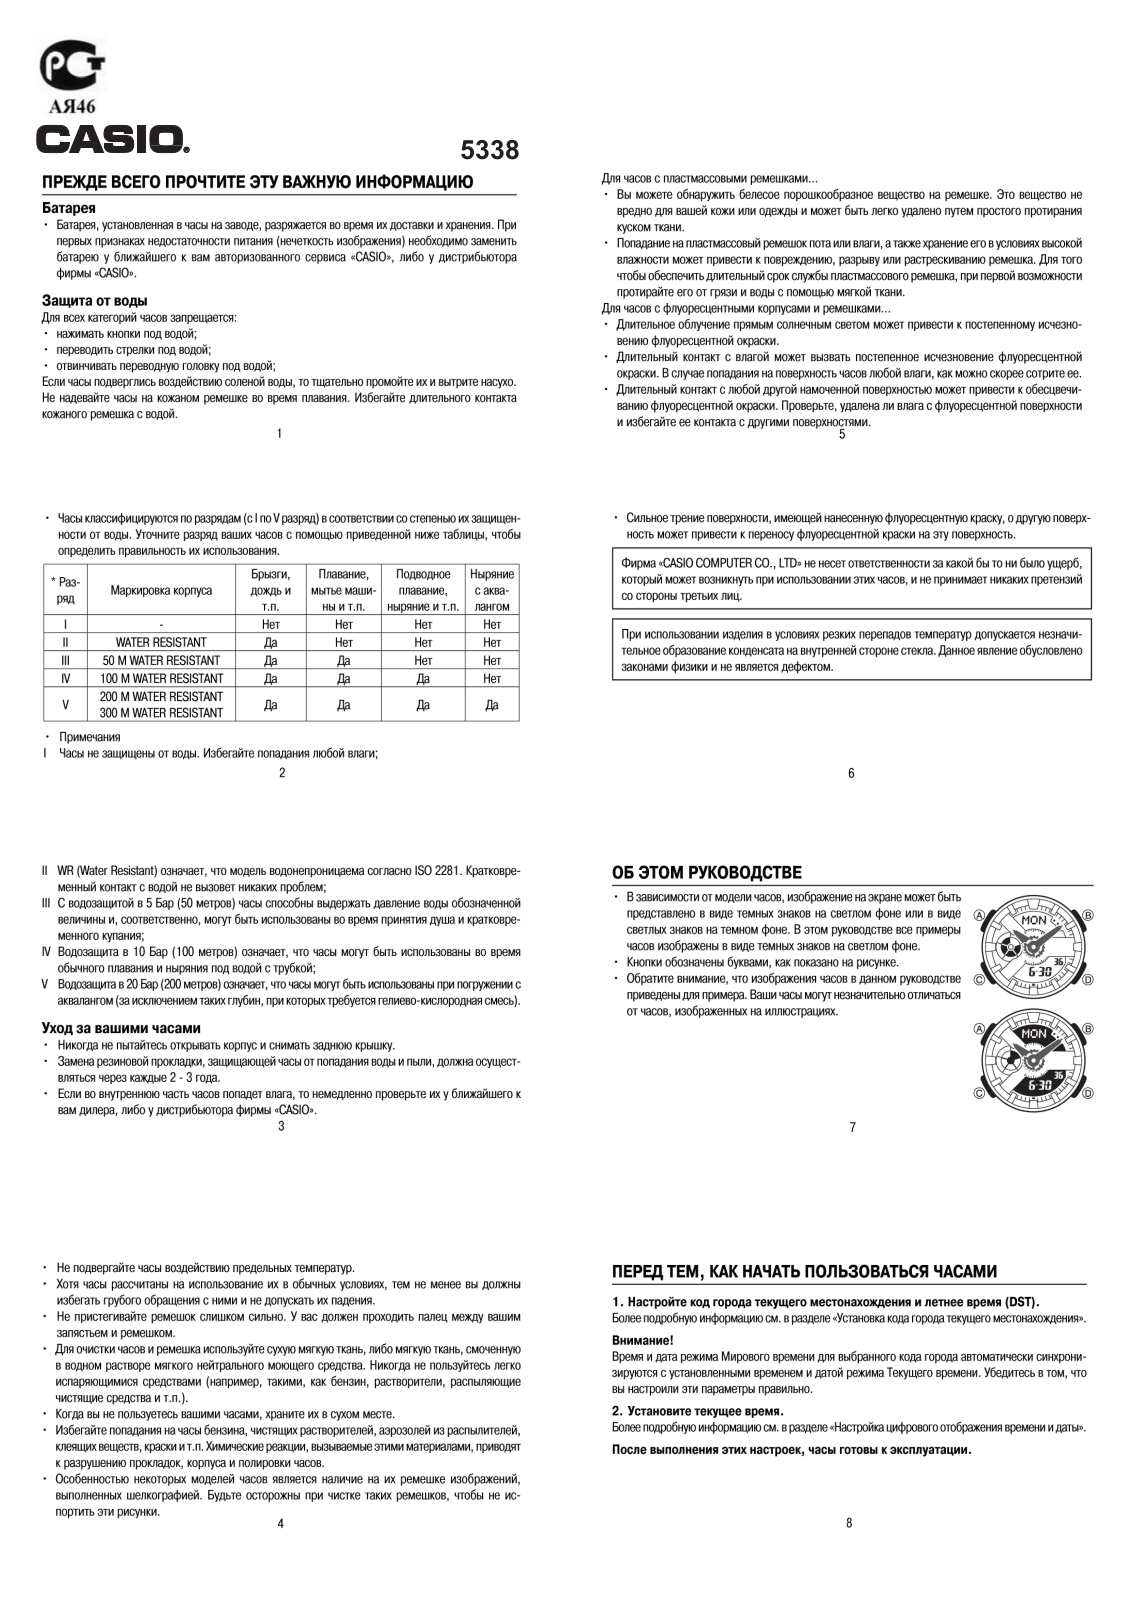 Casio BA-110DC-2A2 User Manual